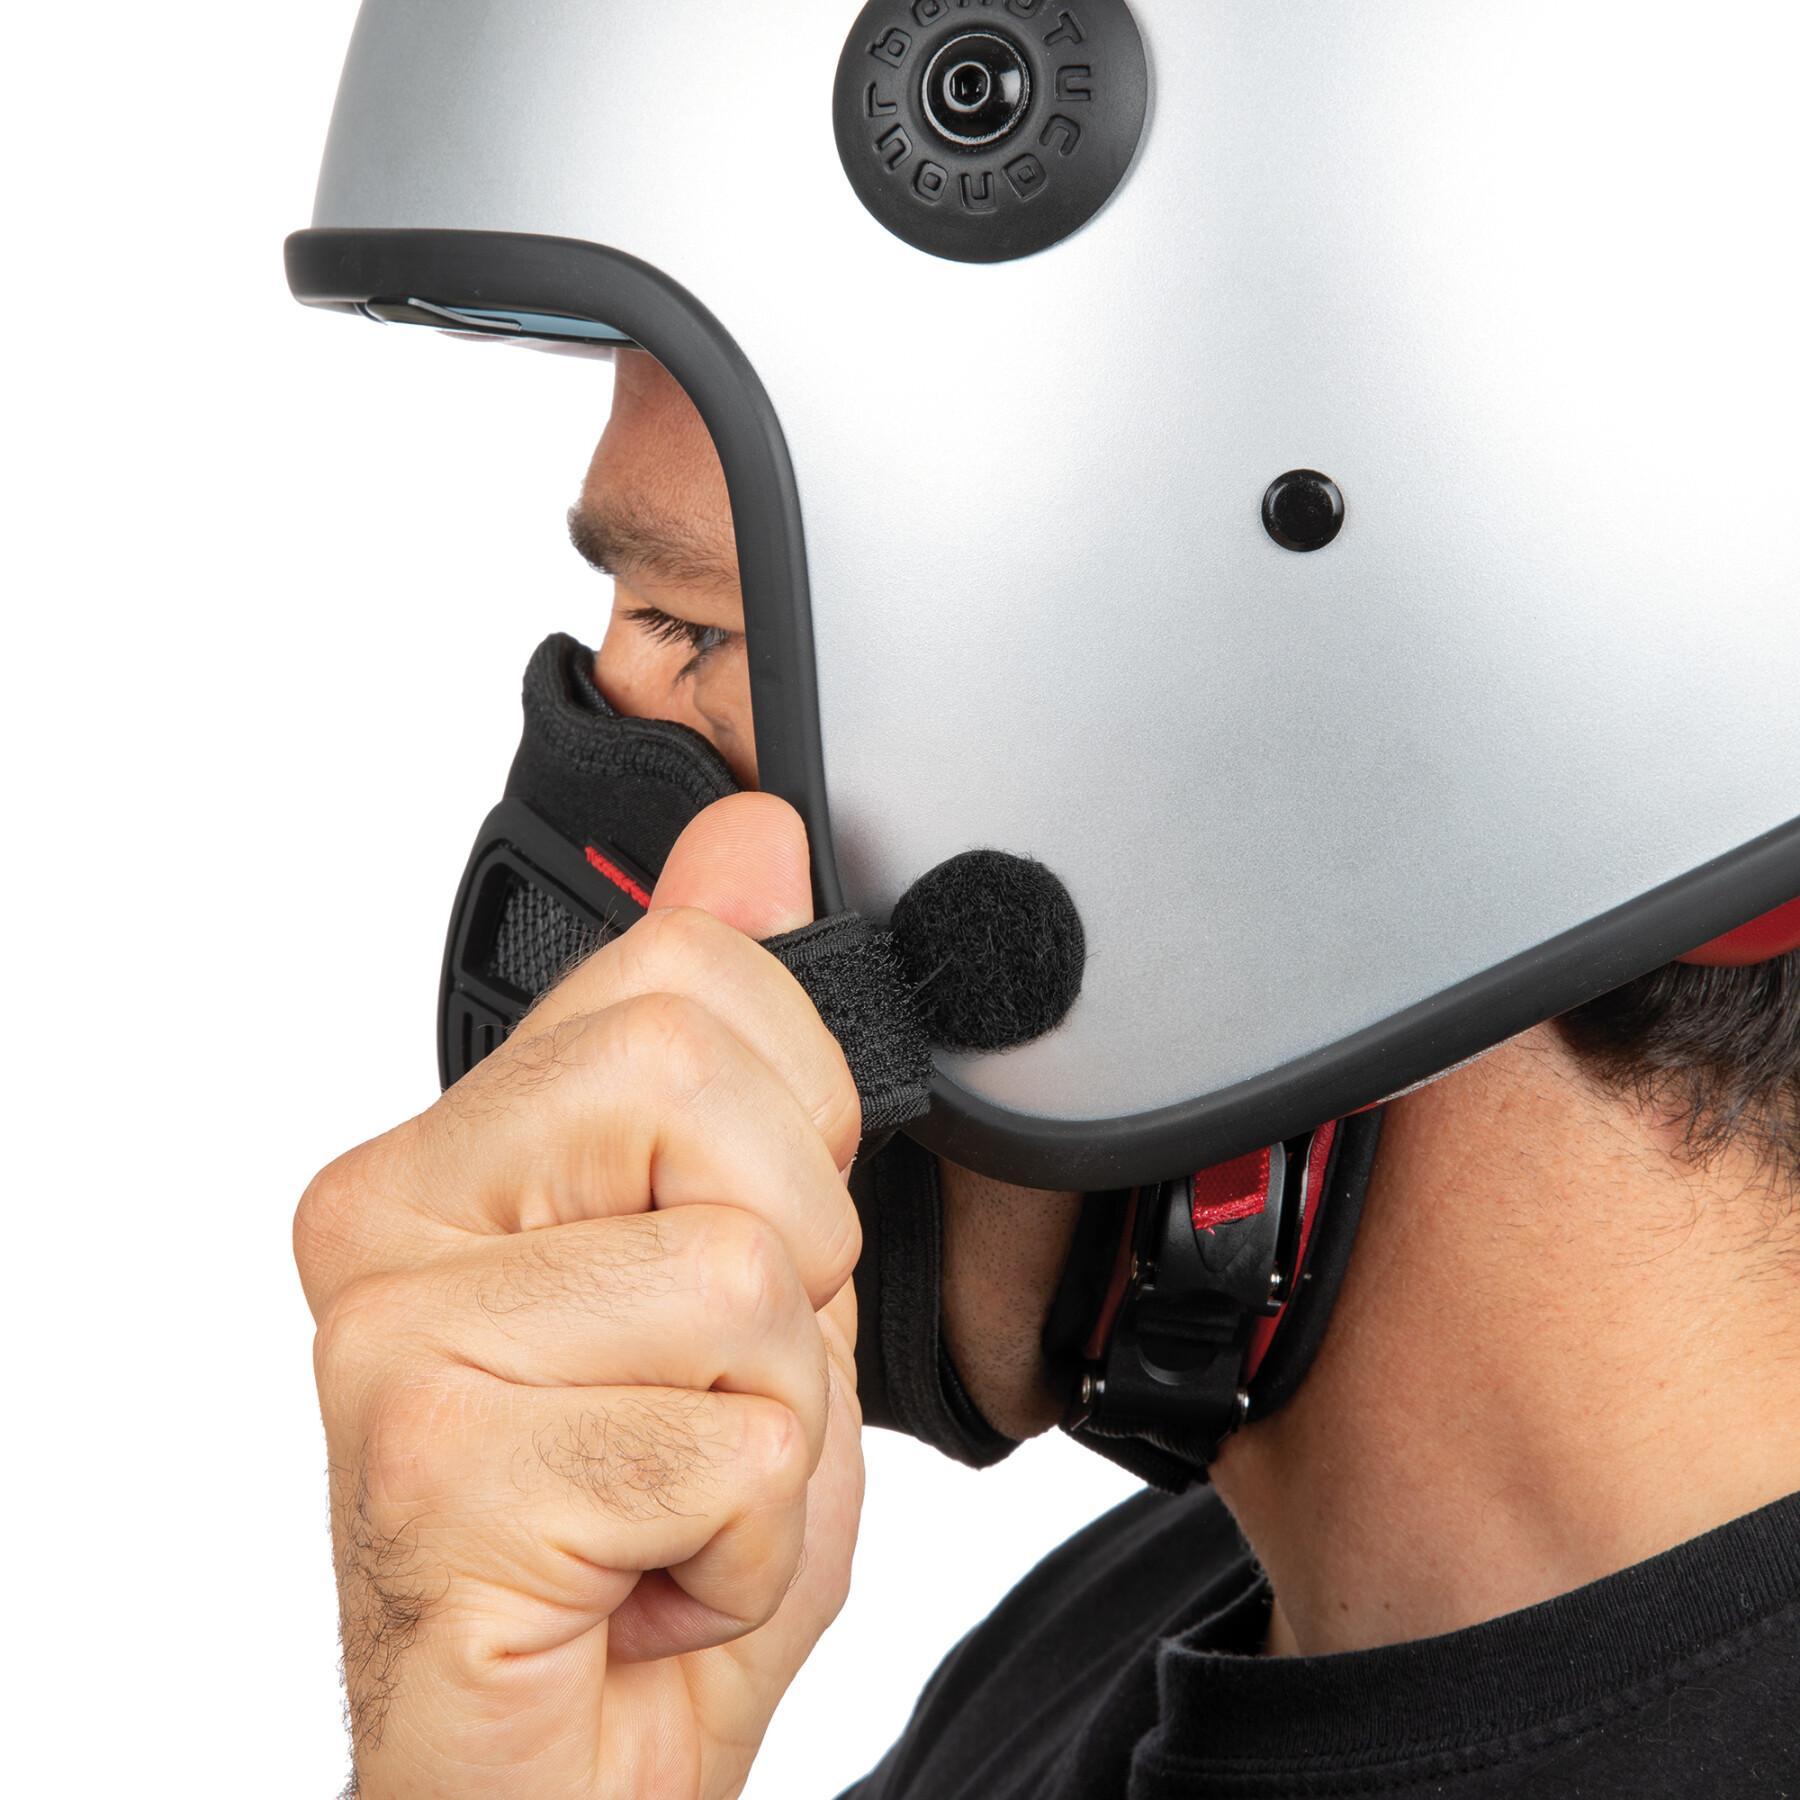 Maschera da moto Tucano Urbano top smog